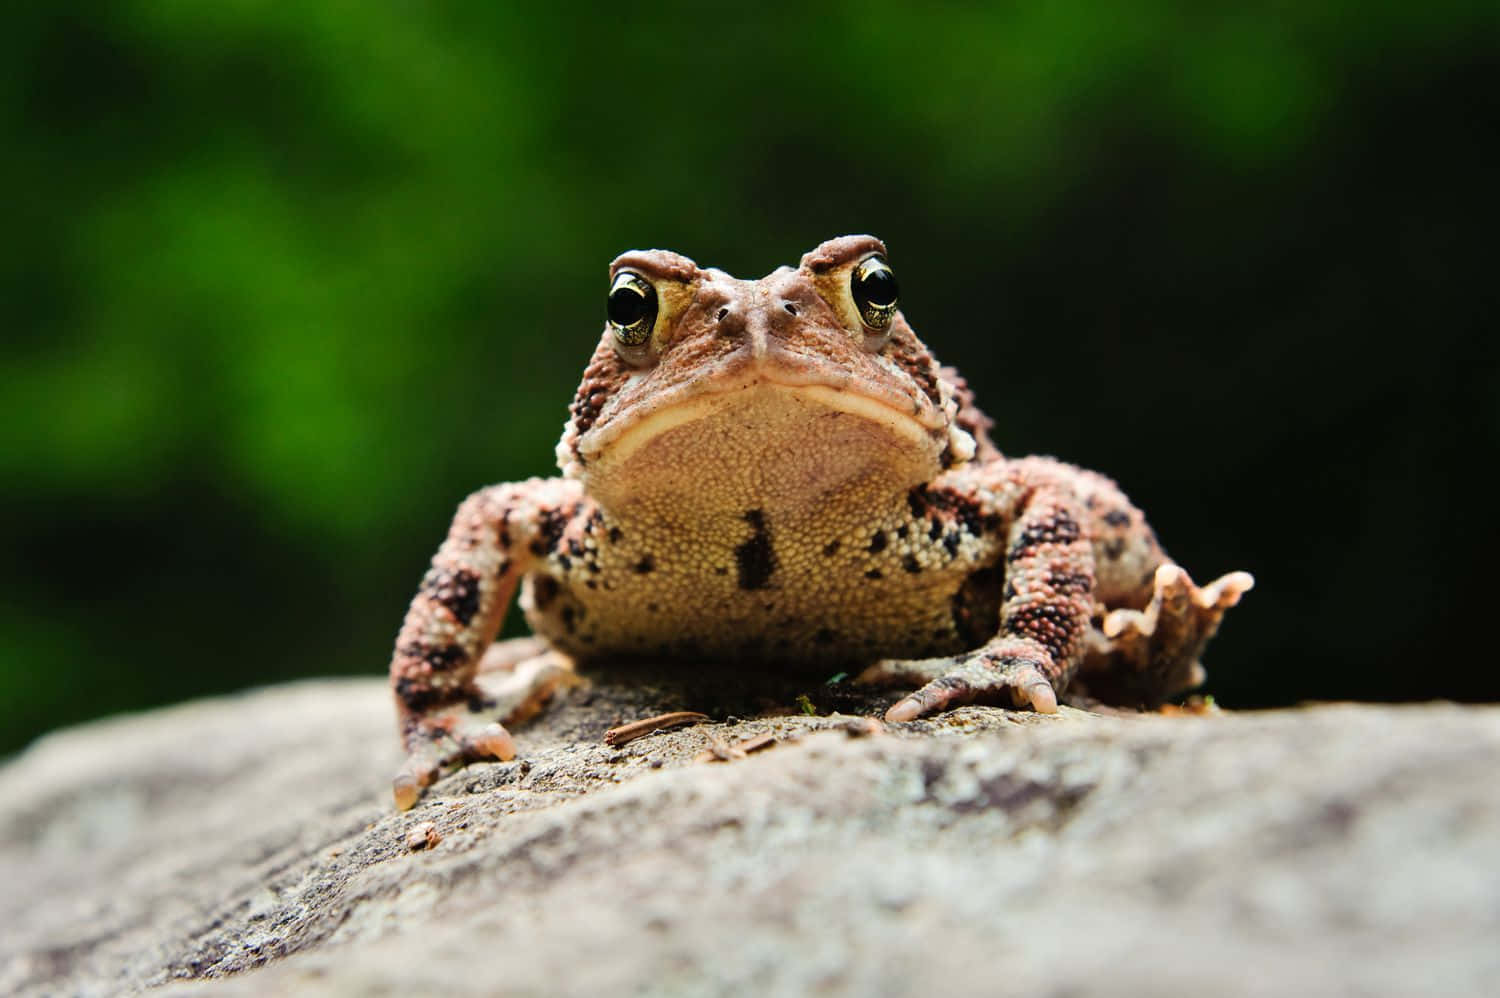 Close Up True Frog On Rock.jpg Wallpaper